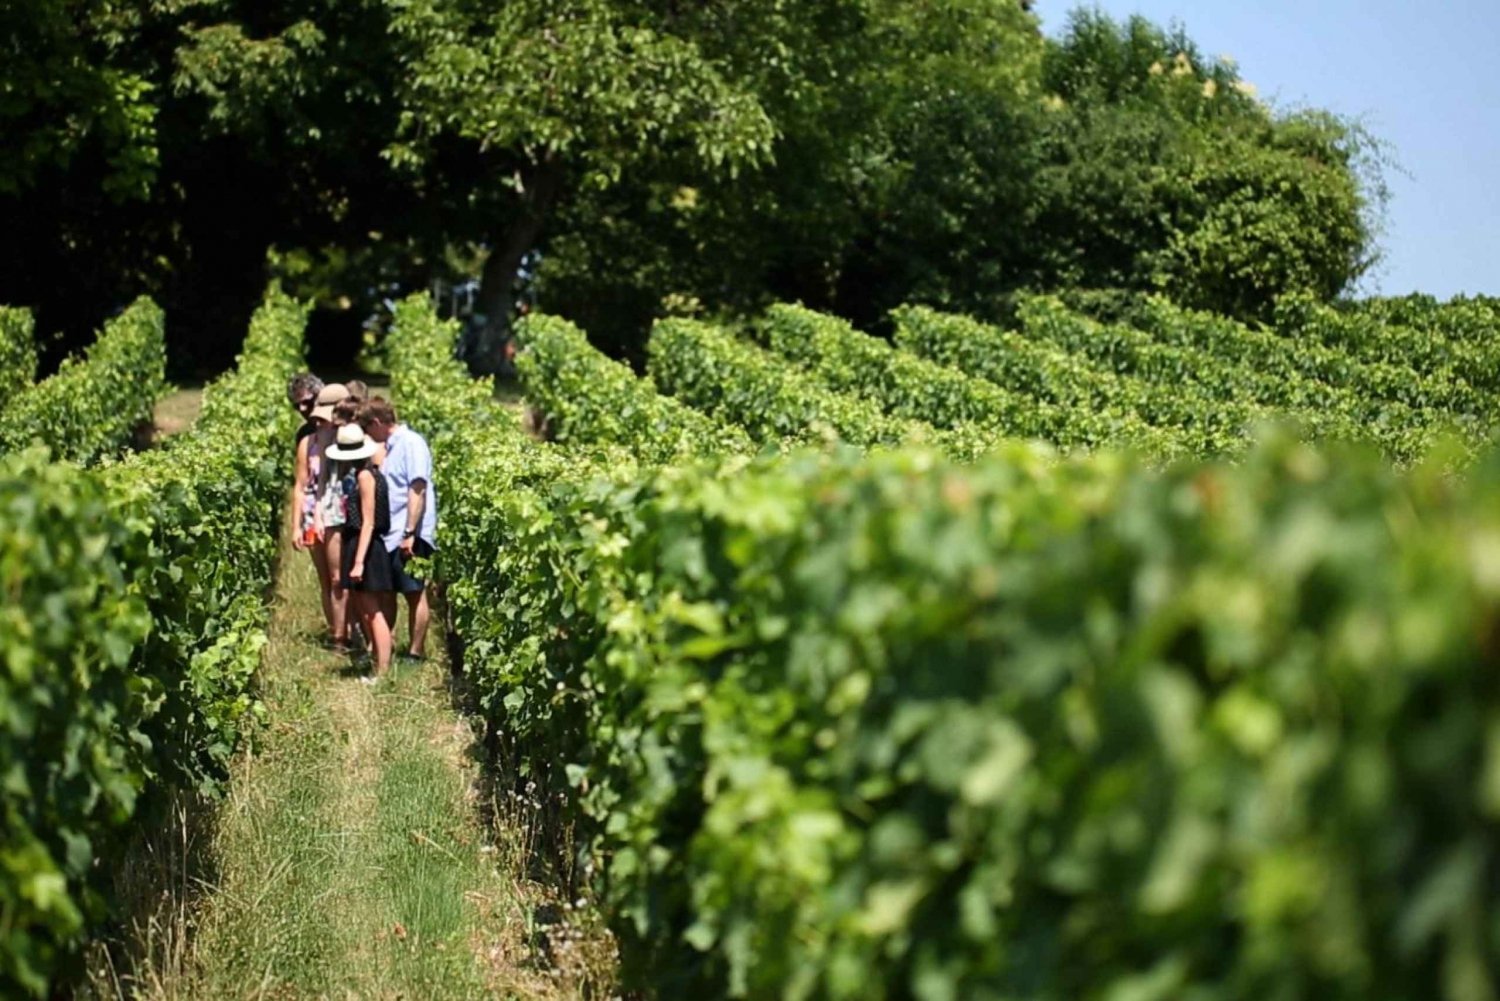 Bordeaux: St-Emilion Vineyards e-Bike Tour with Wine & Lunch